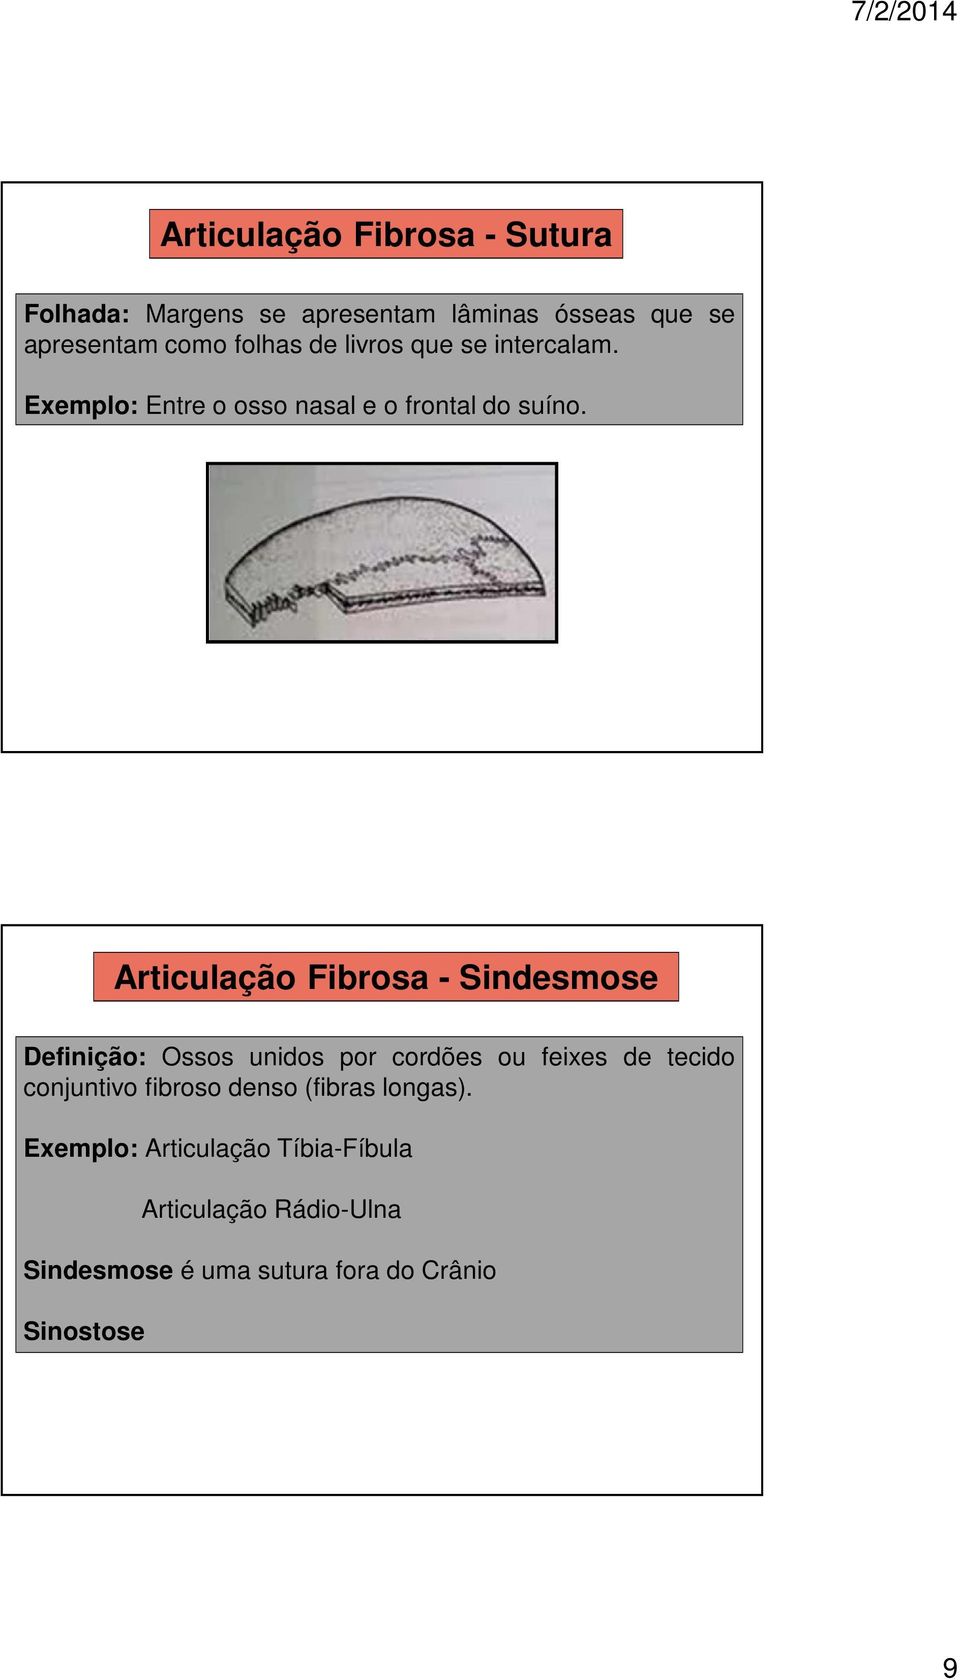 Articulação Fibrosa - Sindesmose Definição: Ossos unidos por cordões ou feixes de tecido conjuntivo